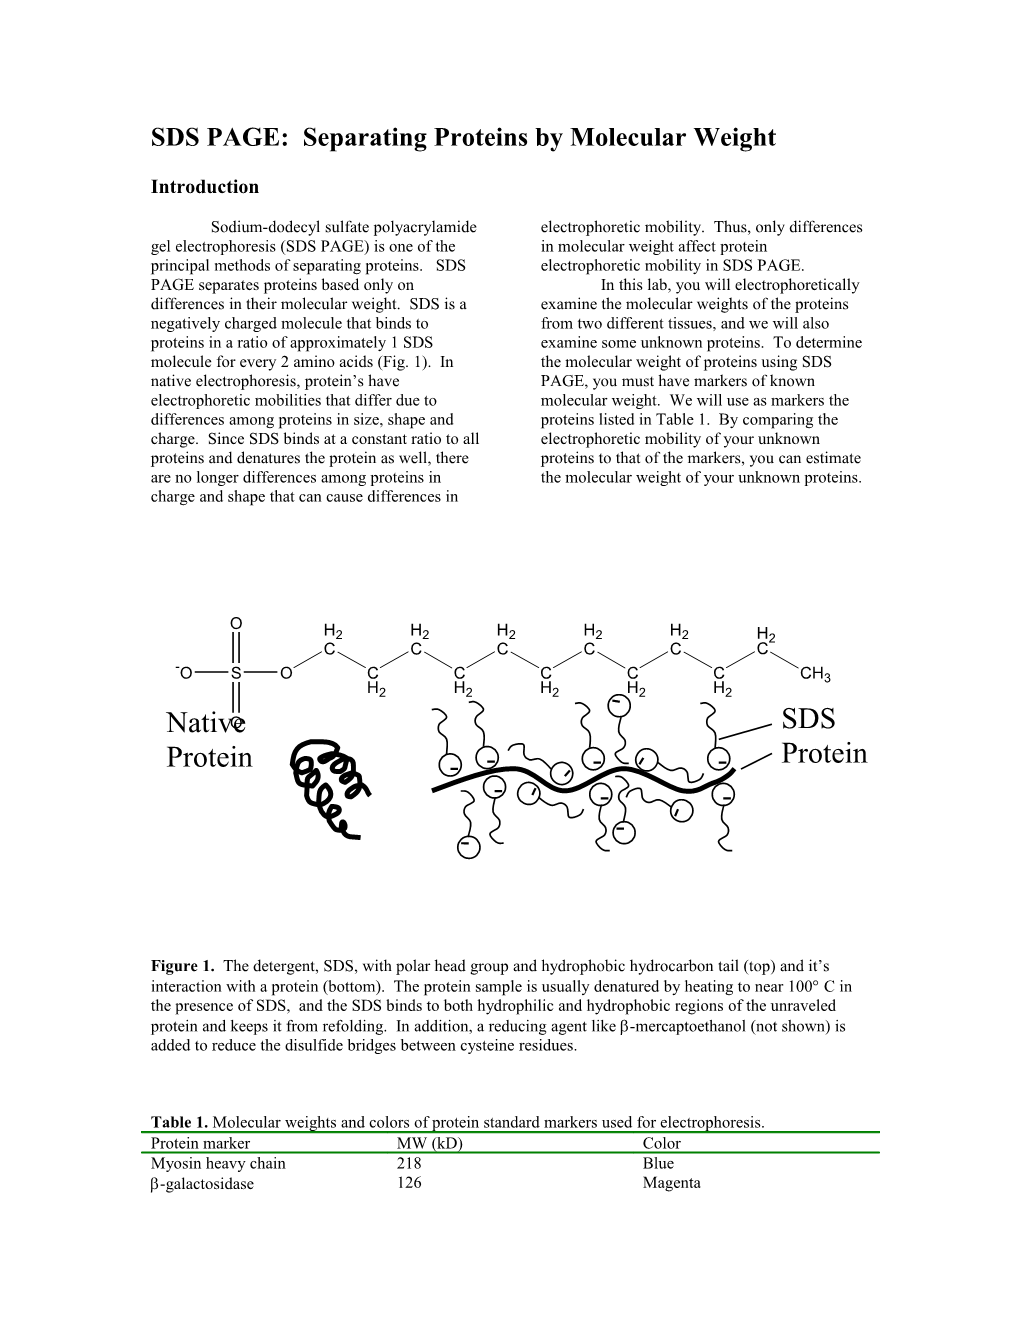 SDS-PAGE: Determination of Protein Molecular Weight